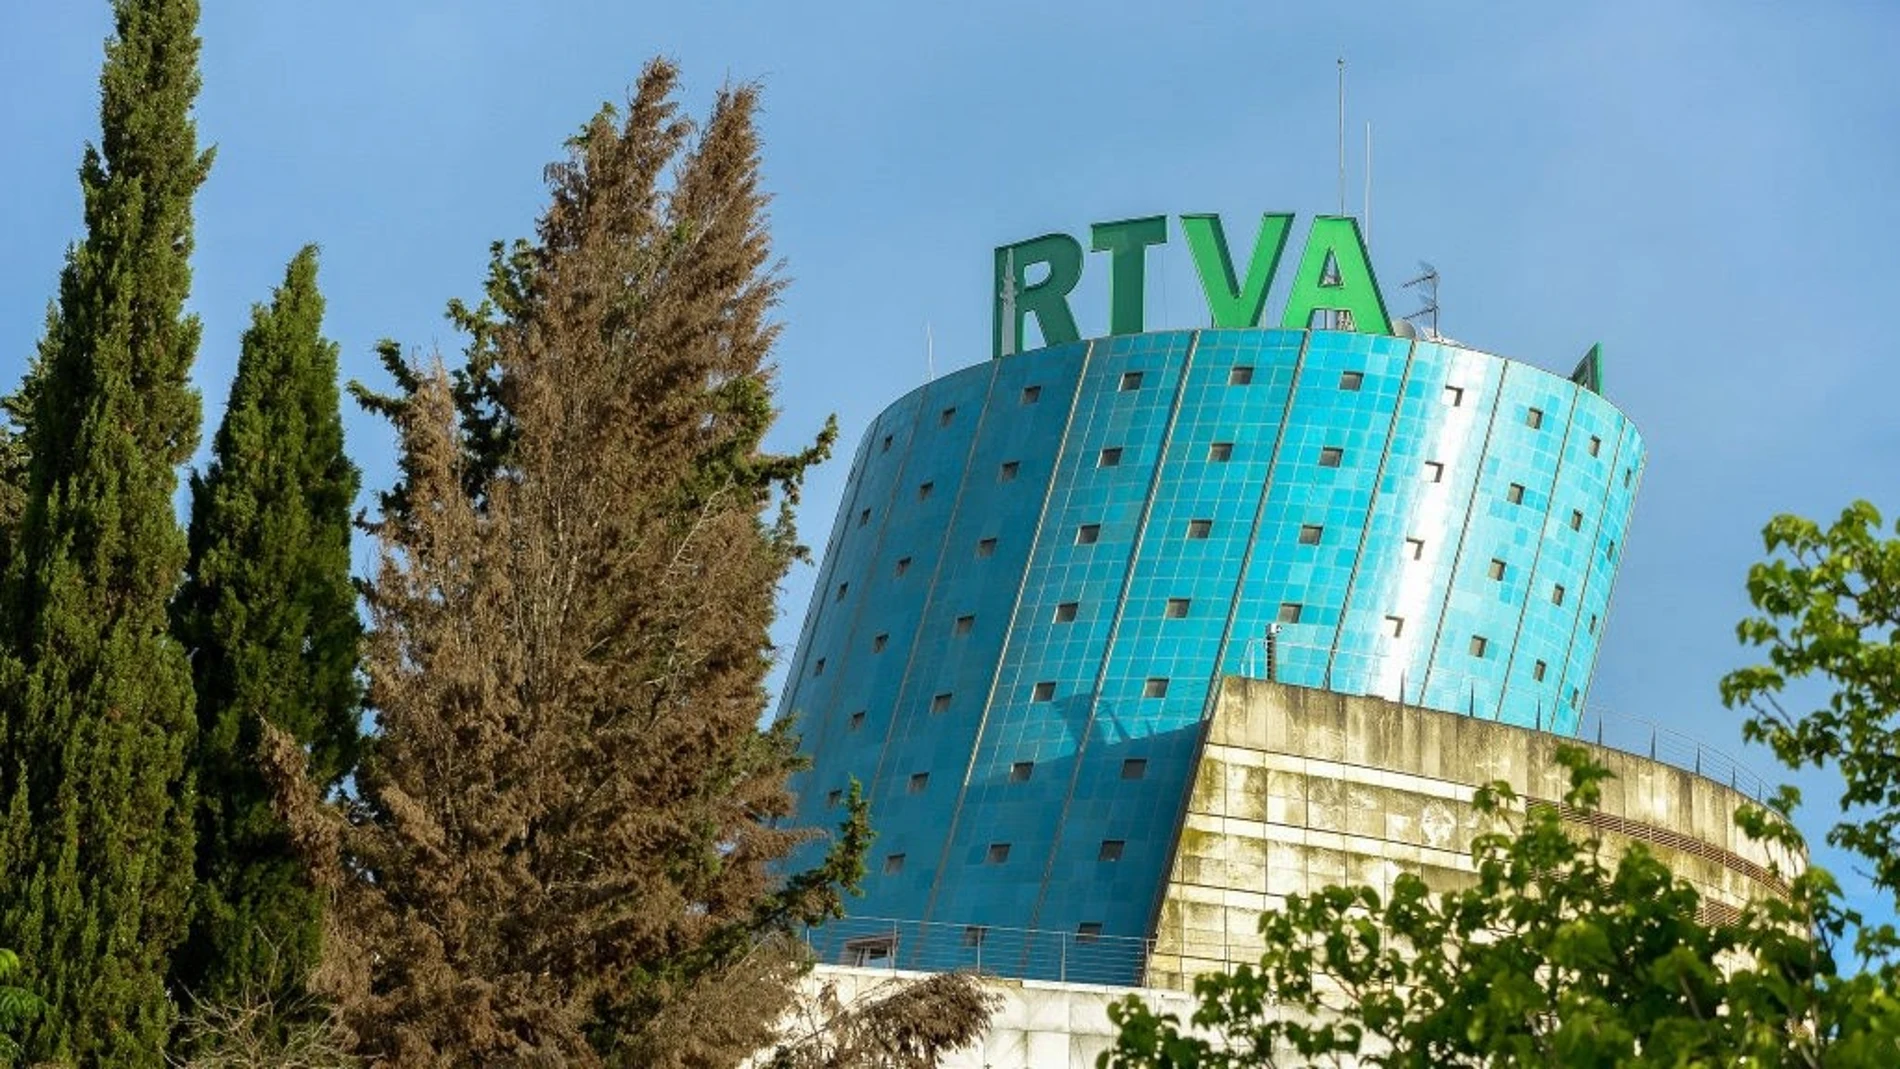 RTVA rechaza "los ataques o campañas de censura" de Vox contra los profesionales de la cadena autonómica